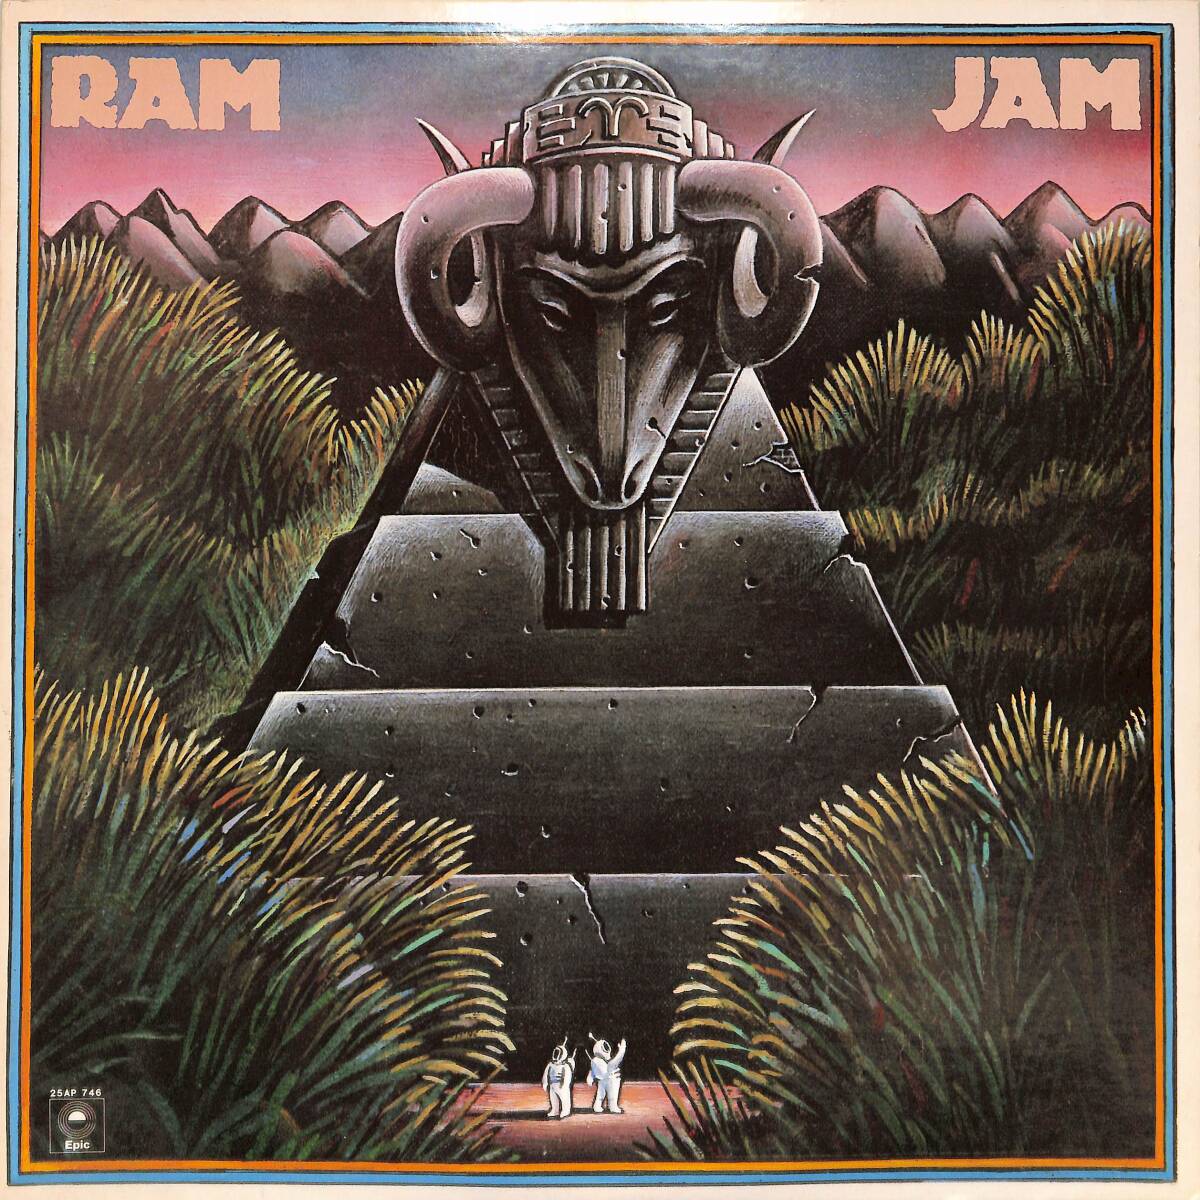 A00593754/LP/ラム・ジャム「Ram Jam ブラック・ベティ (1977年・25AP-746・ハードロック)」の画像1